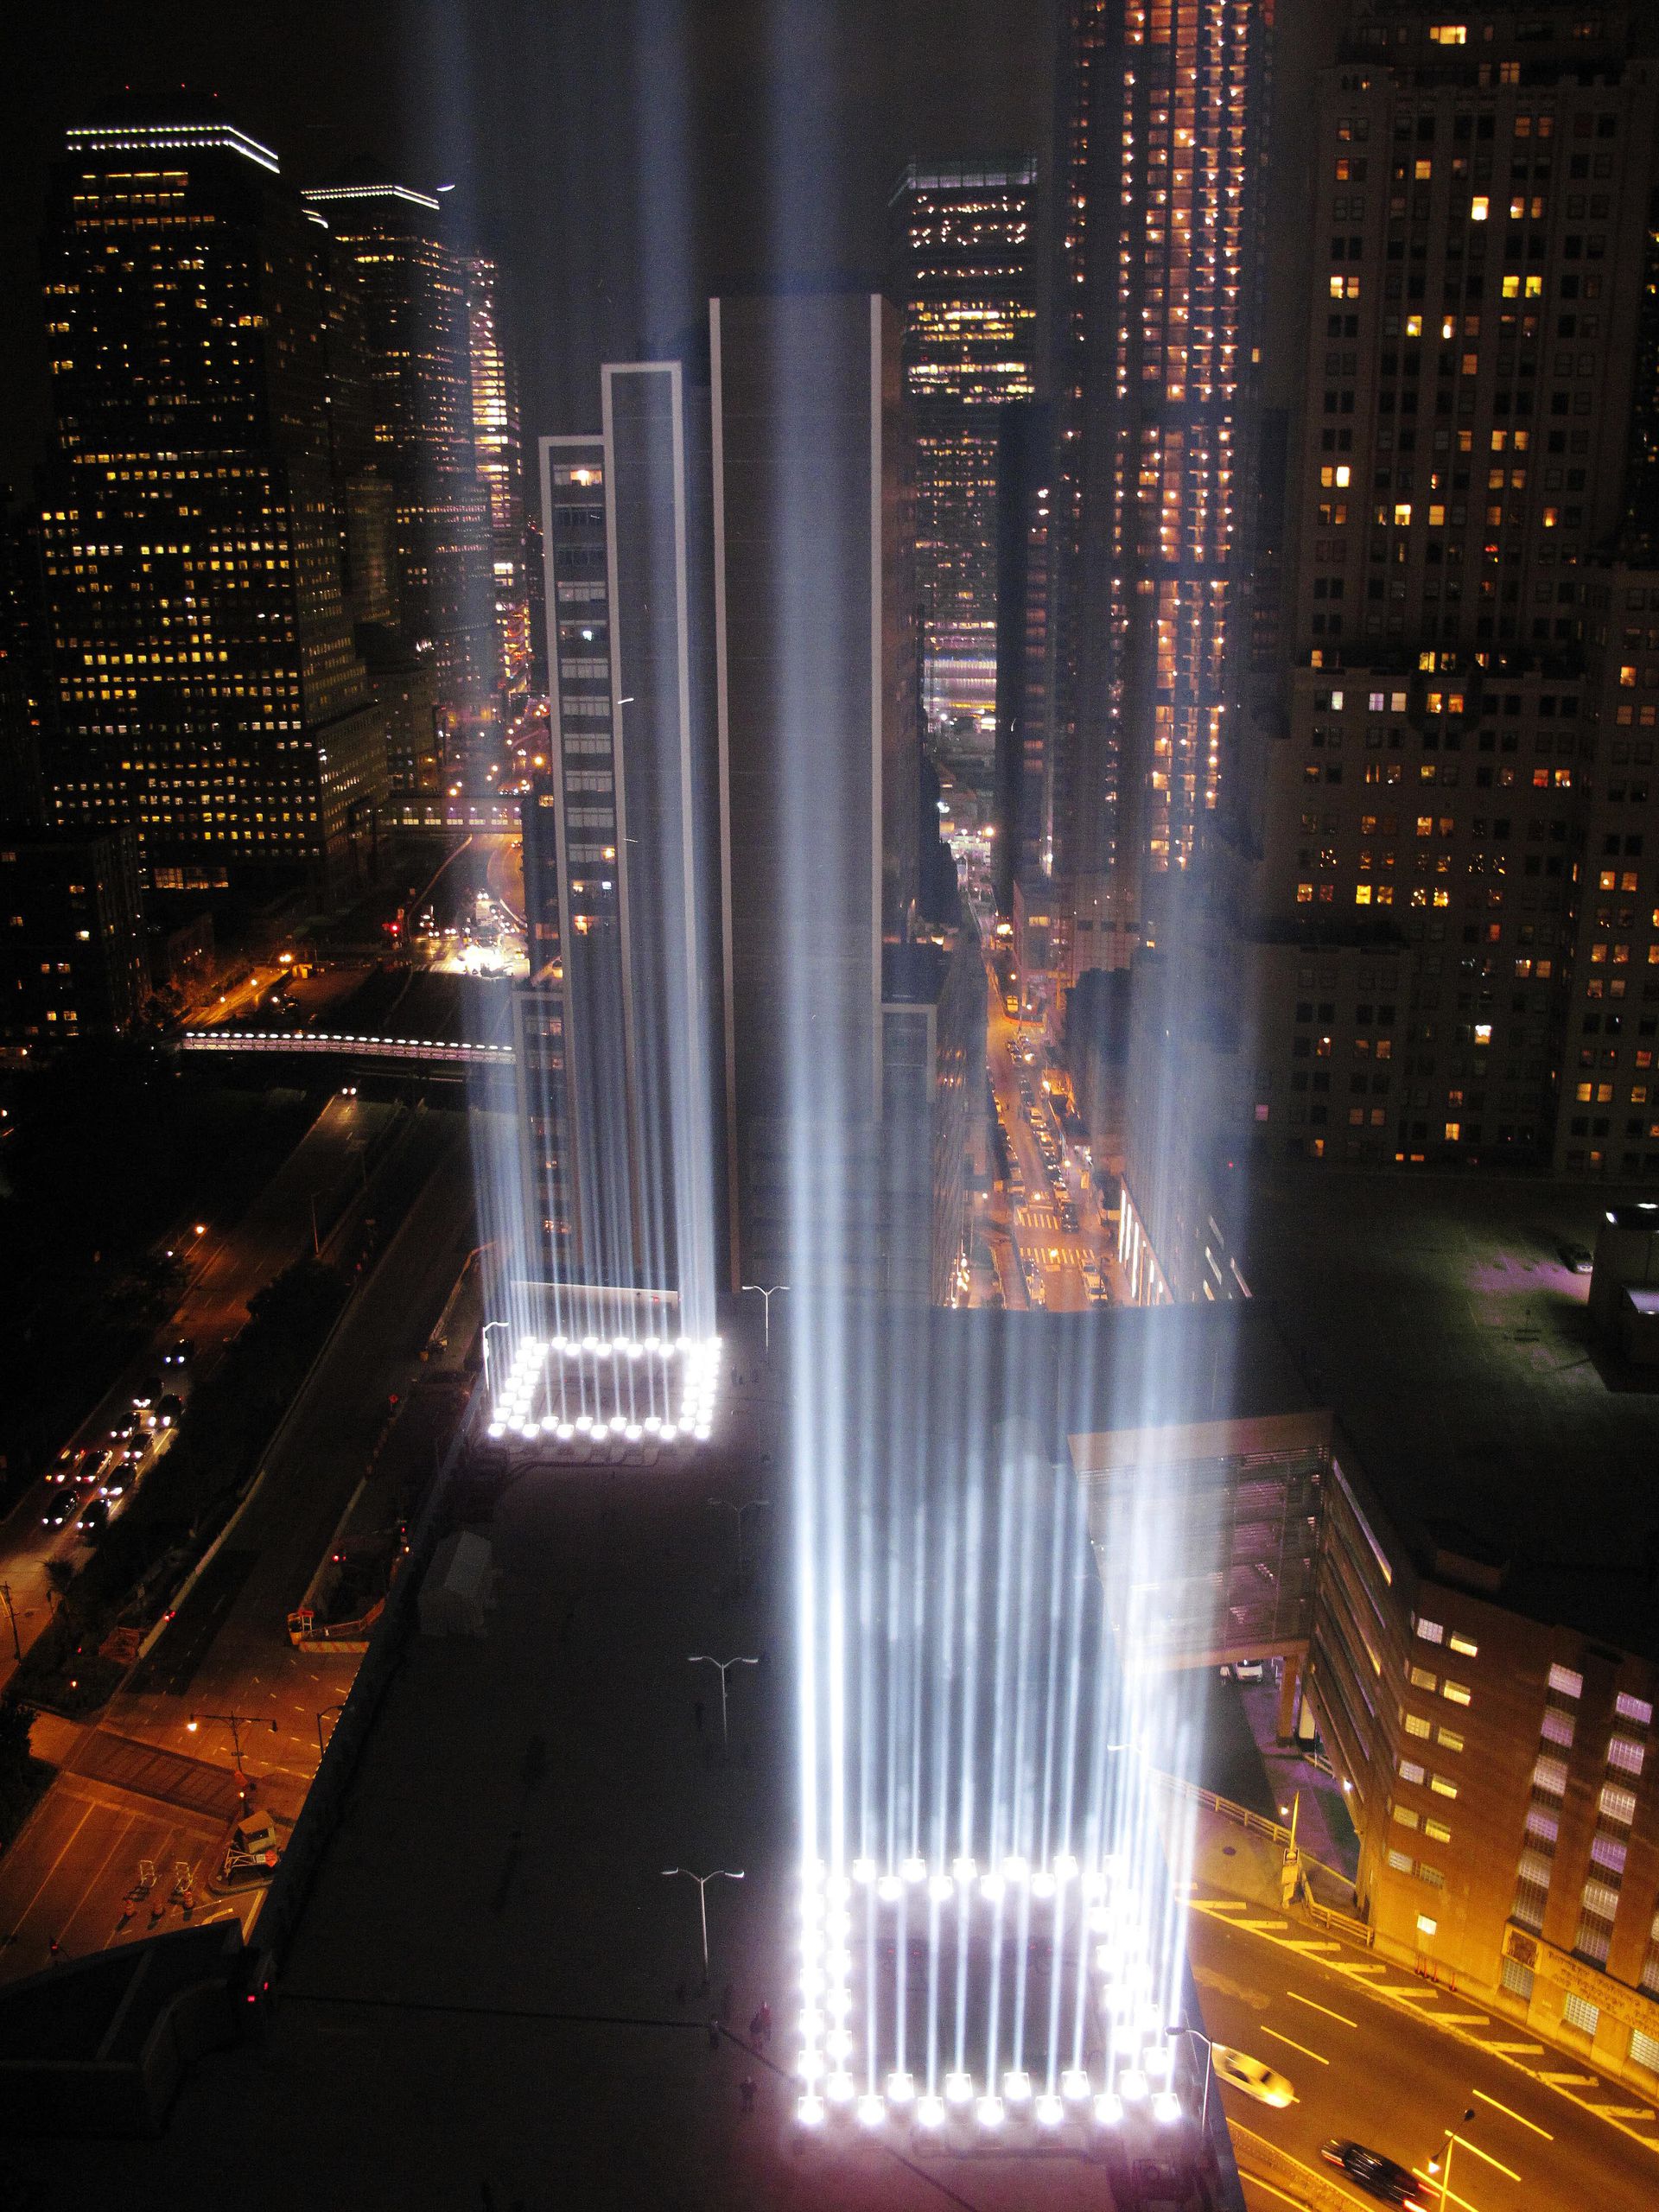 на месте башен близнецов в нью йорке построили мемориал